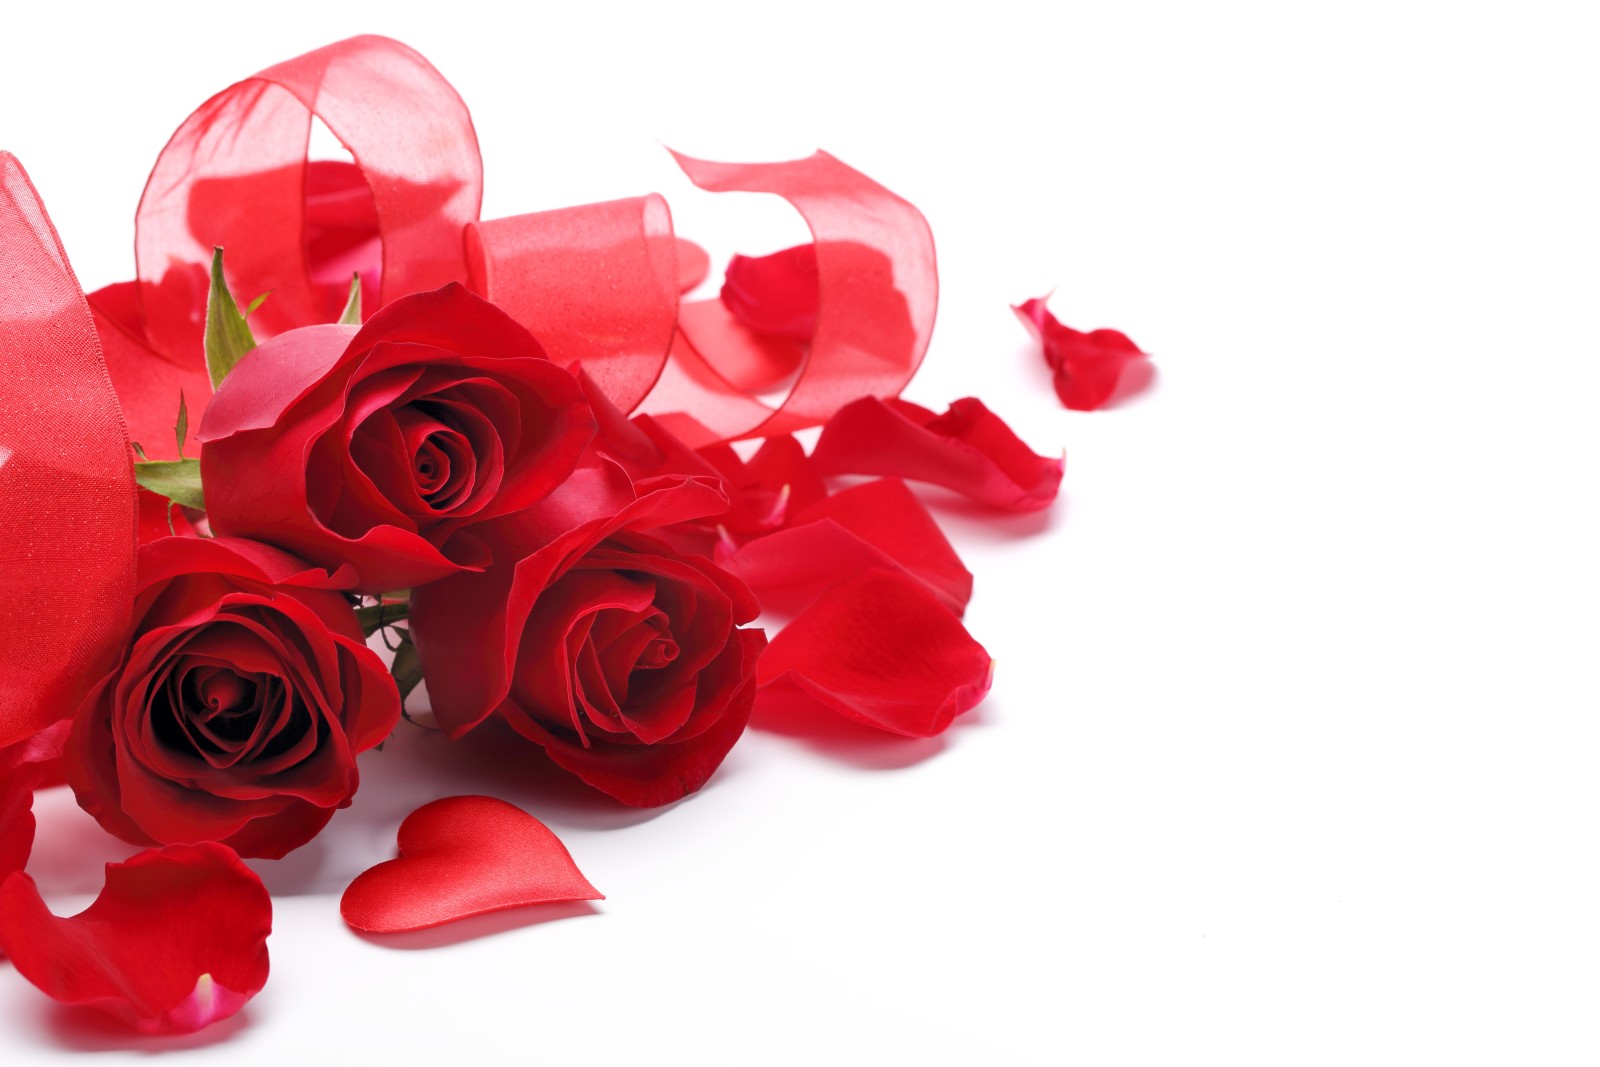 สีแดง, ดอกกุหลาบ, หัวใจ, กลีบดอก, พื้นหลังสีขาว, ริบบิ้น